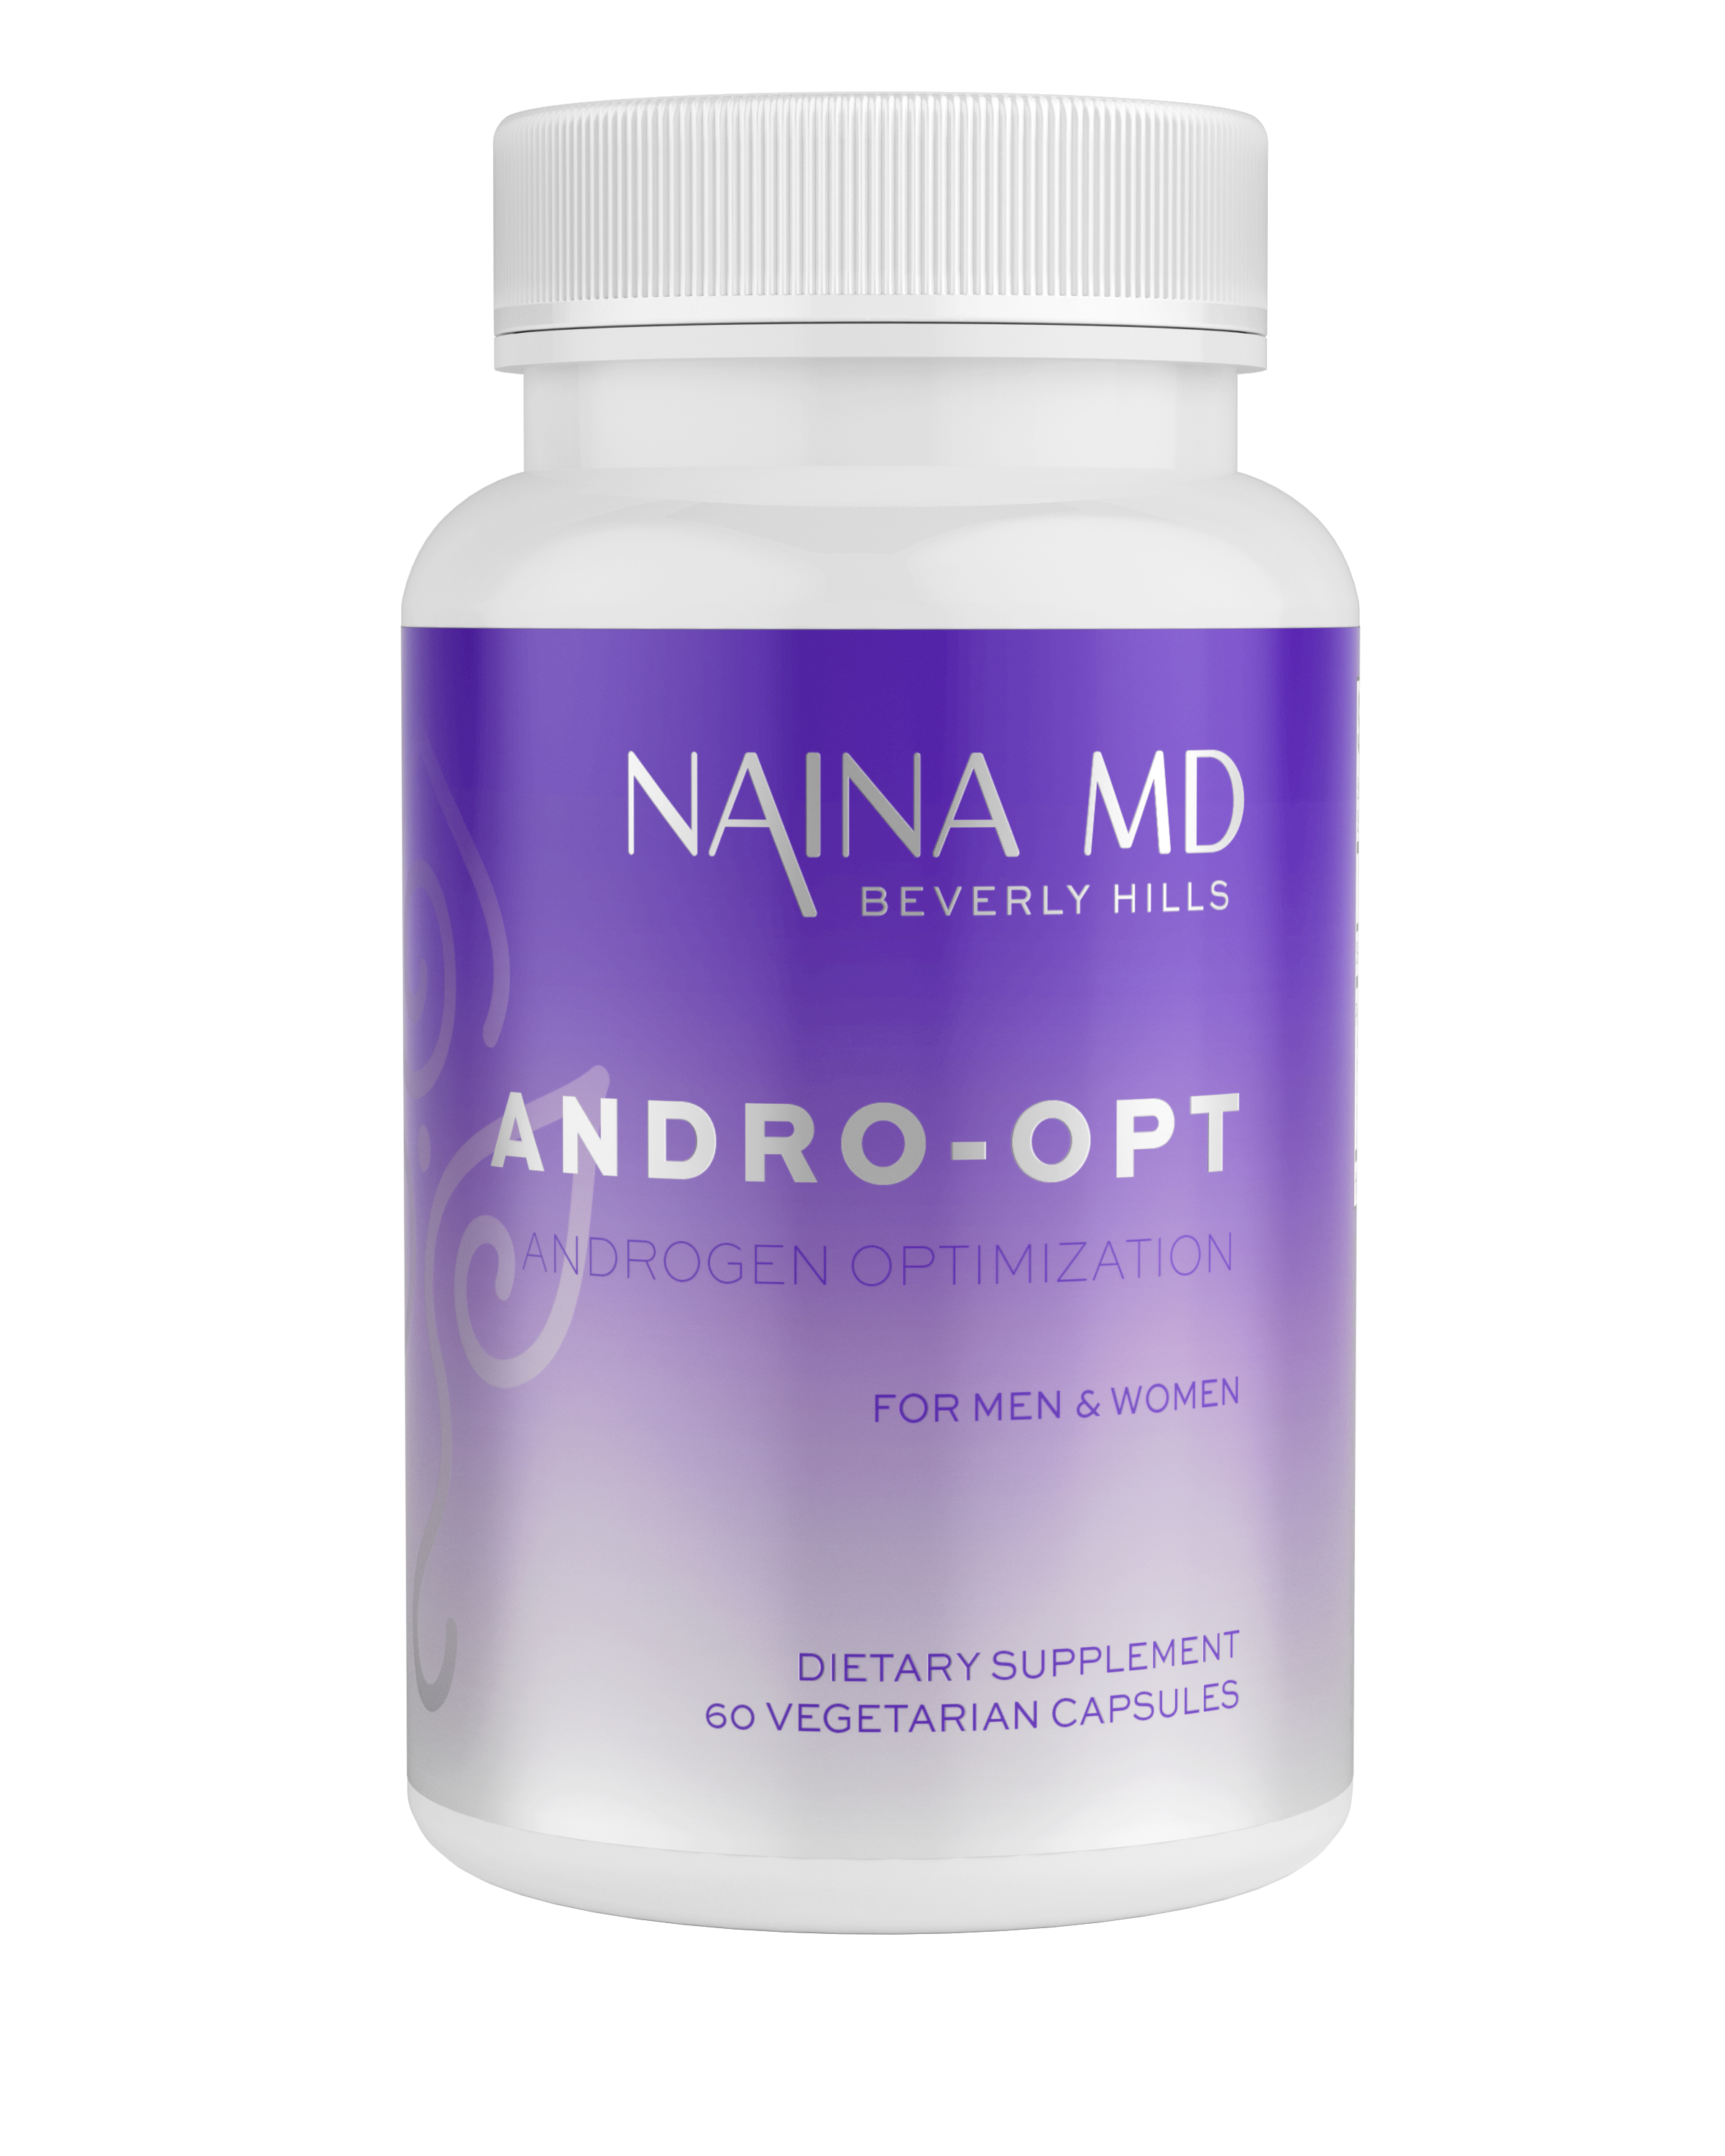 NainaMD Andro-Opt Androgen Optimization